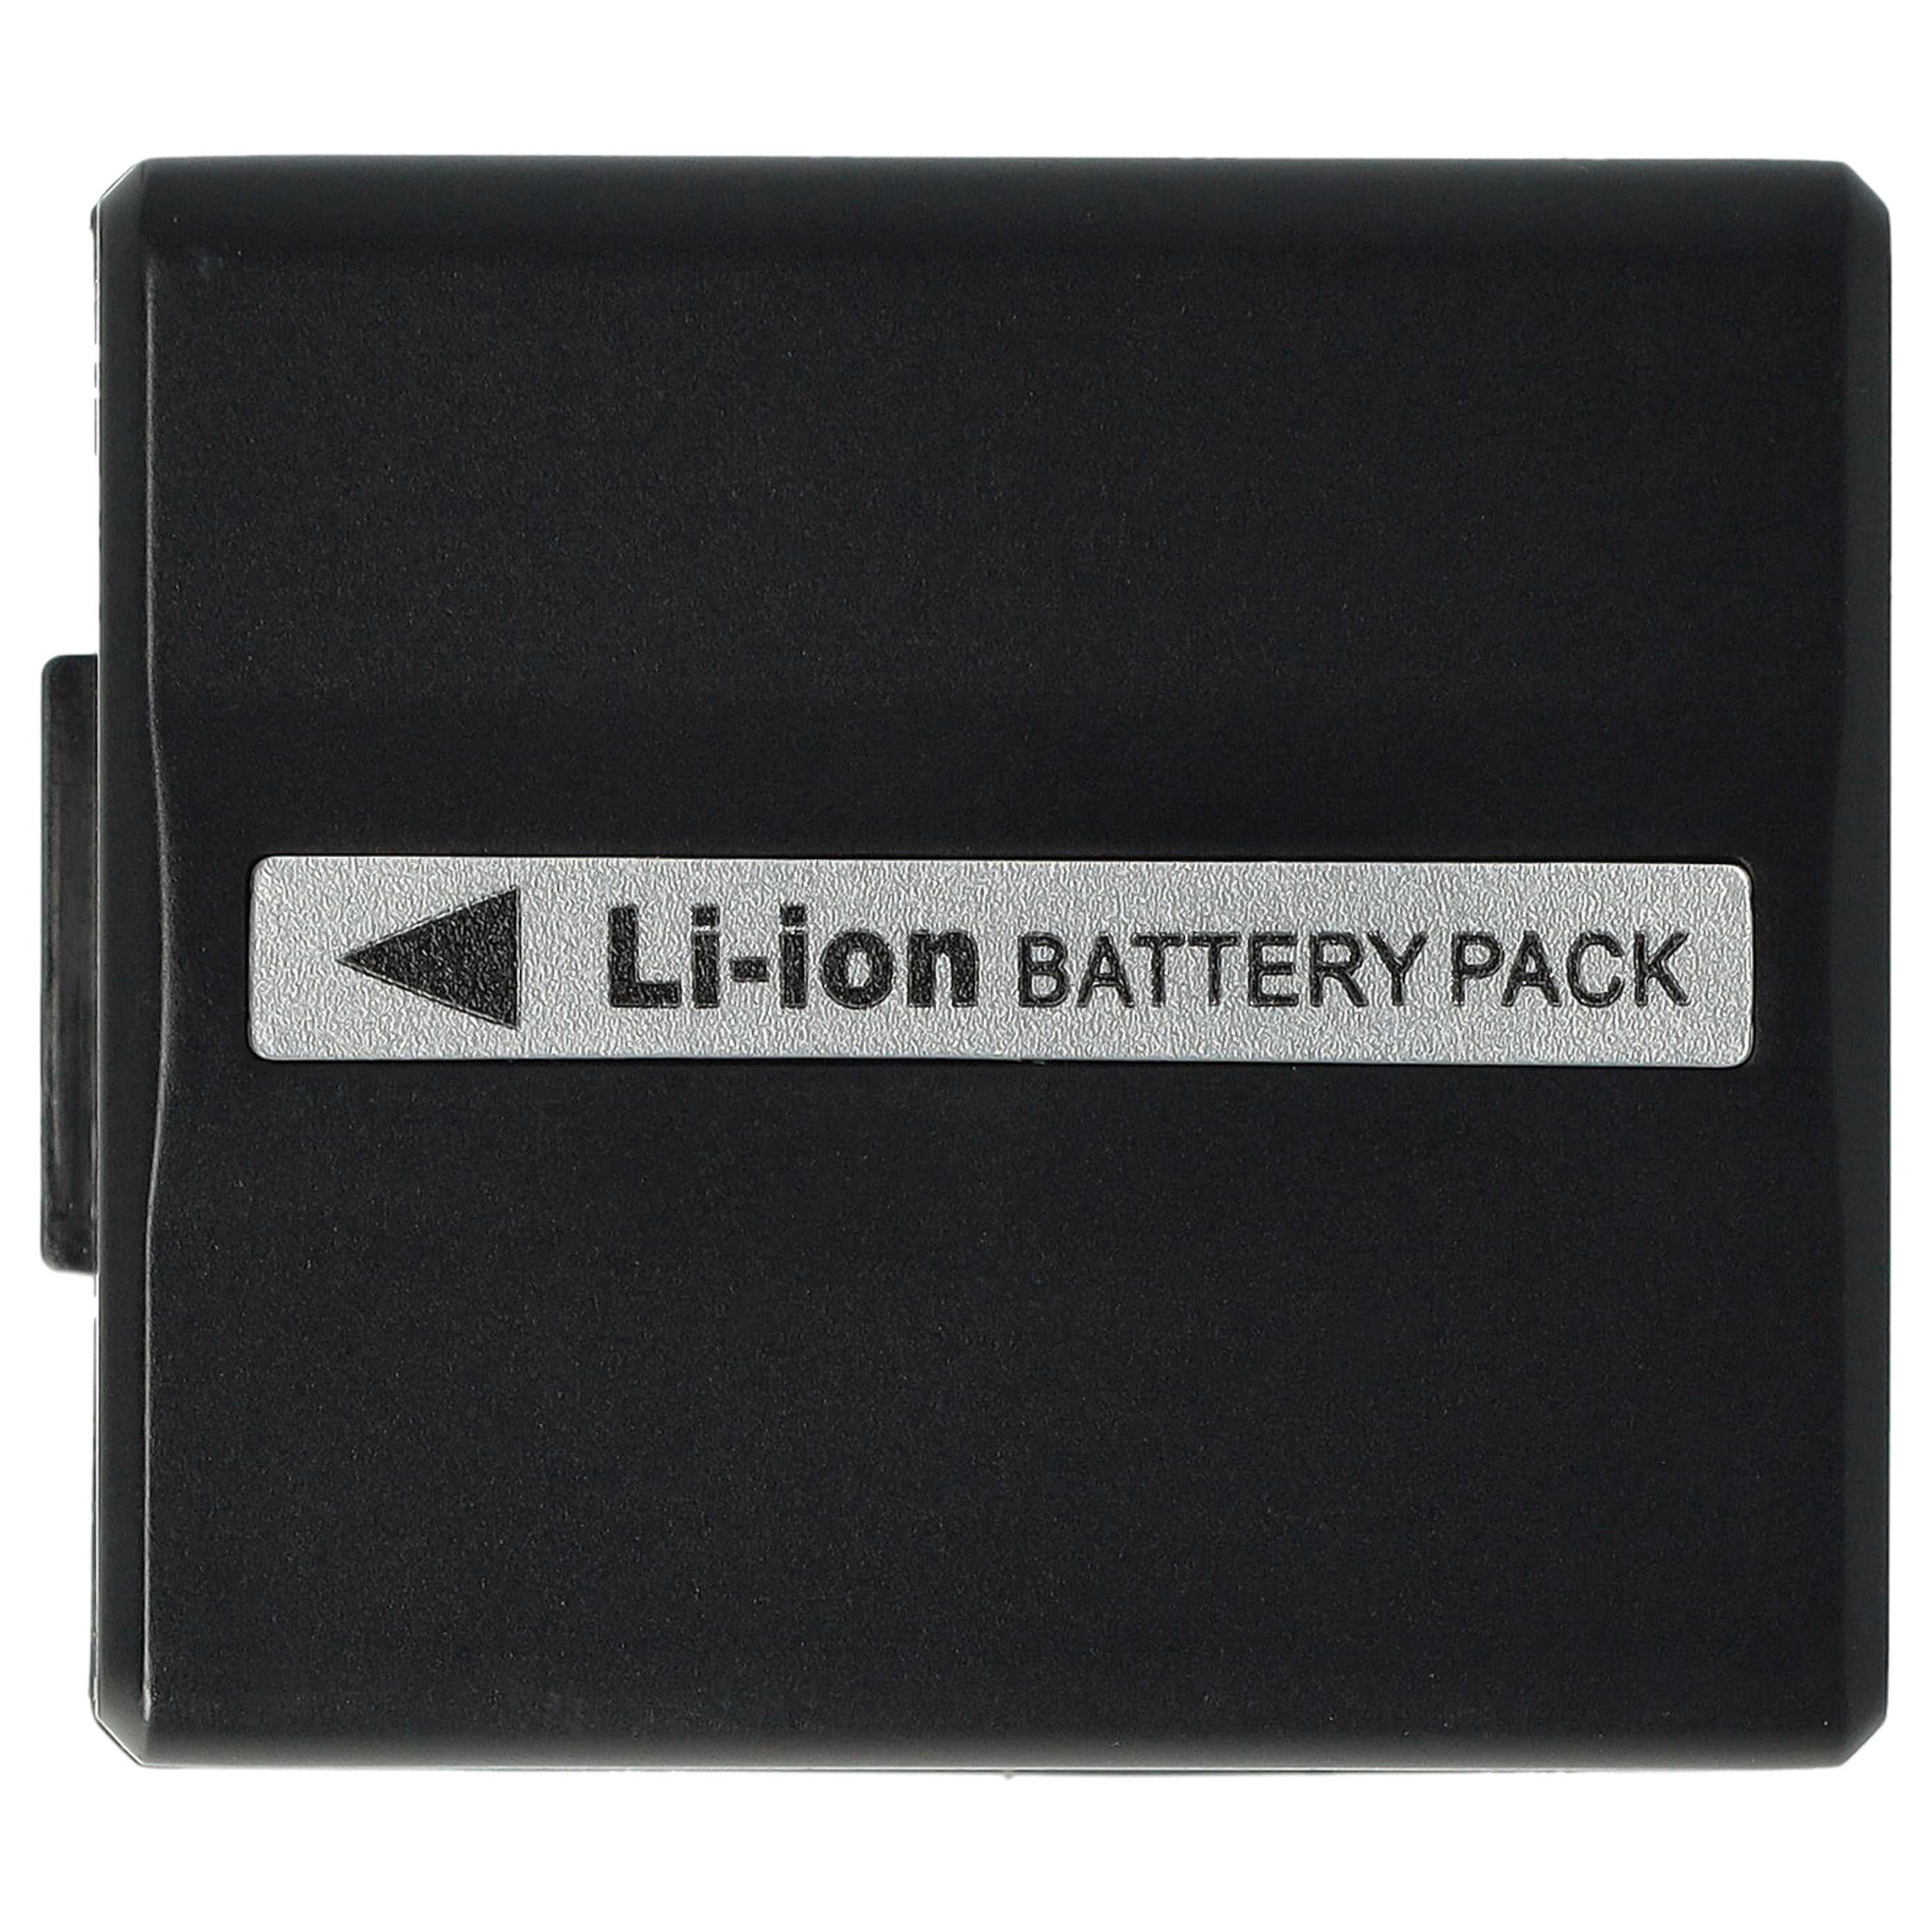 Batterie remplace Hitachi DZ-BP07s, DZ-BP14s, DZ-BP21s pour caméscope - 600mAh 7,2V Li-ion